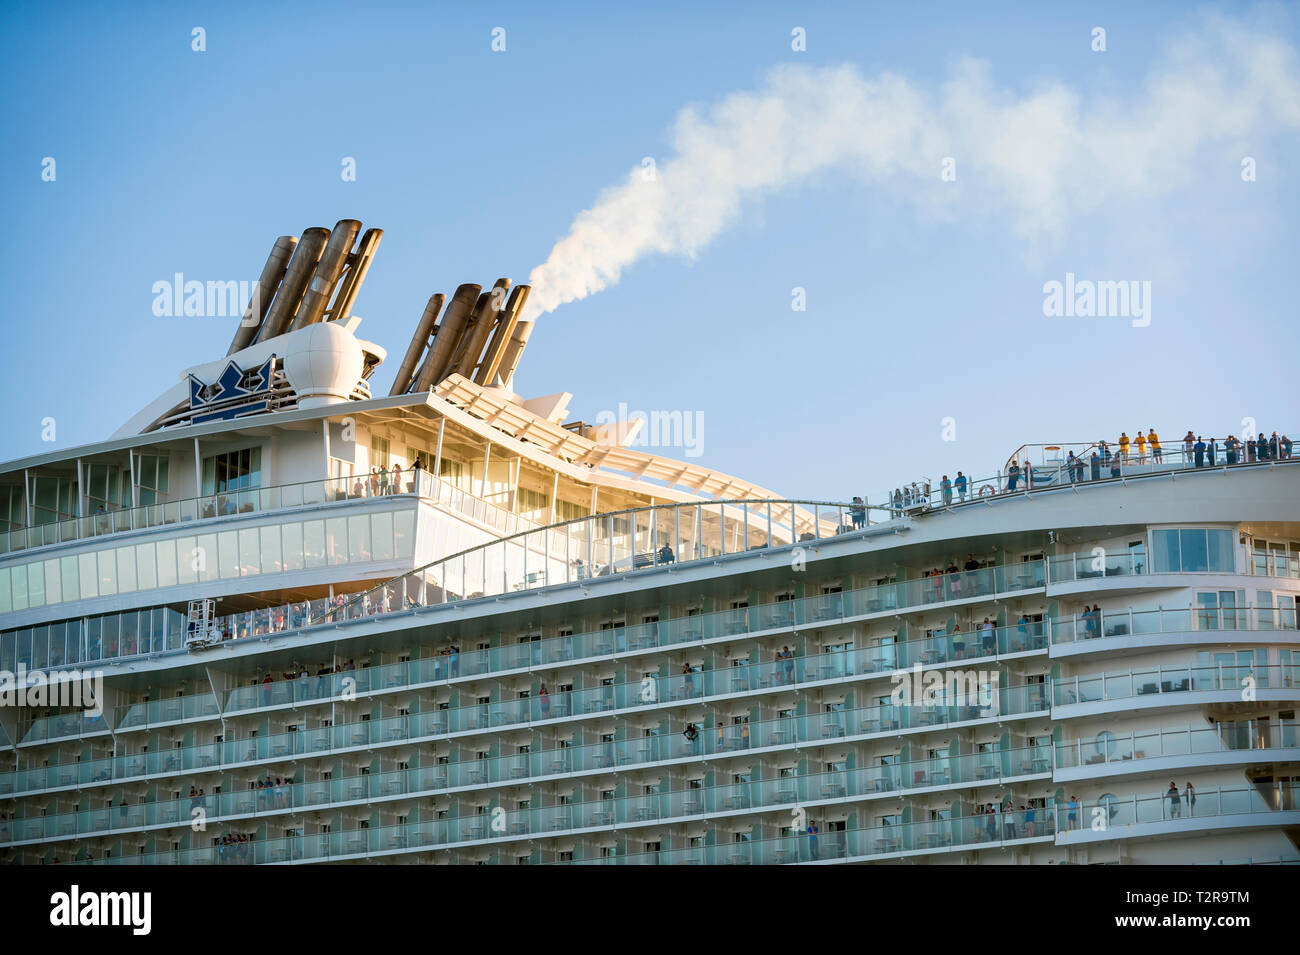 MIAMI - Dezember 30, 2018: ein Schornstein belches Rauch auf der Royal Caribbean Allüre der Meere, größte Kreuzfahrtschiff der Welt. Stockfoto